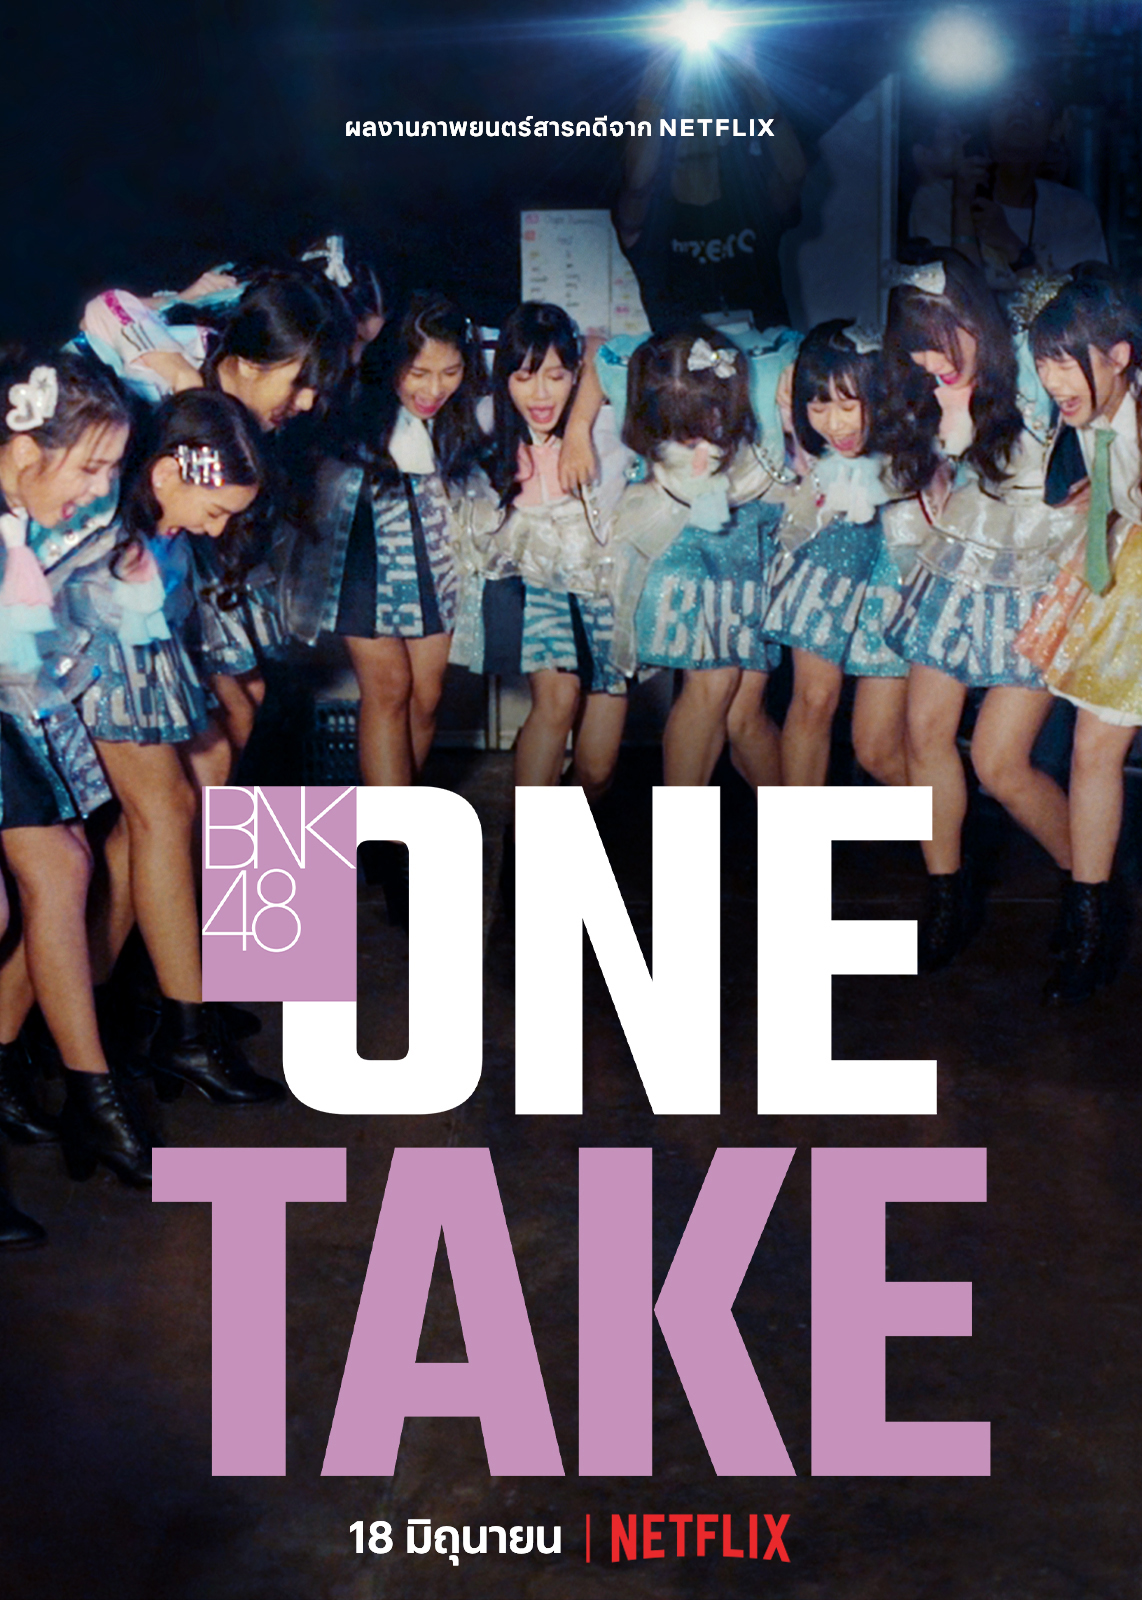 เฌอปราง - เจน BNK48 ชวนดู “One Take” ล็อกปฏิทินพร้อมกัน 18 มิ.ย.นี้ ทาง Netflix